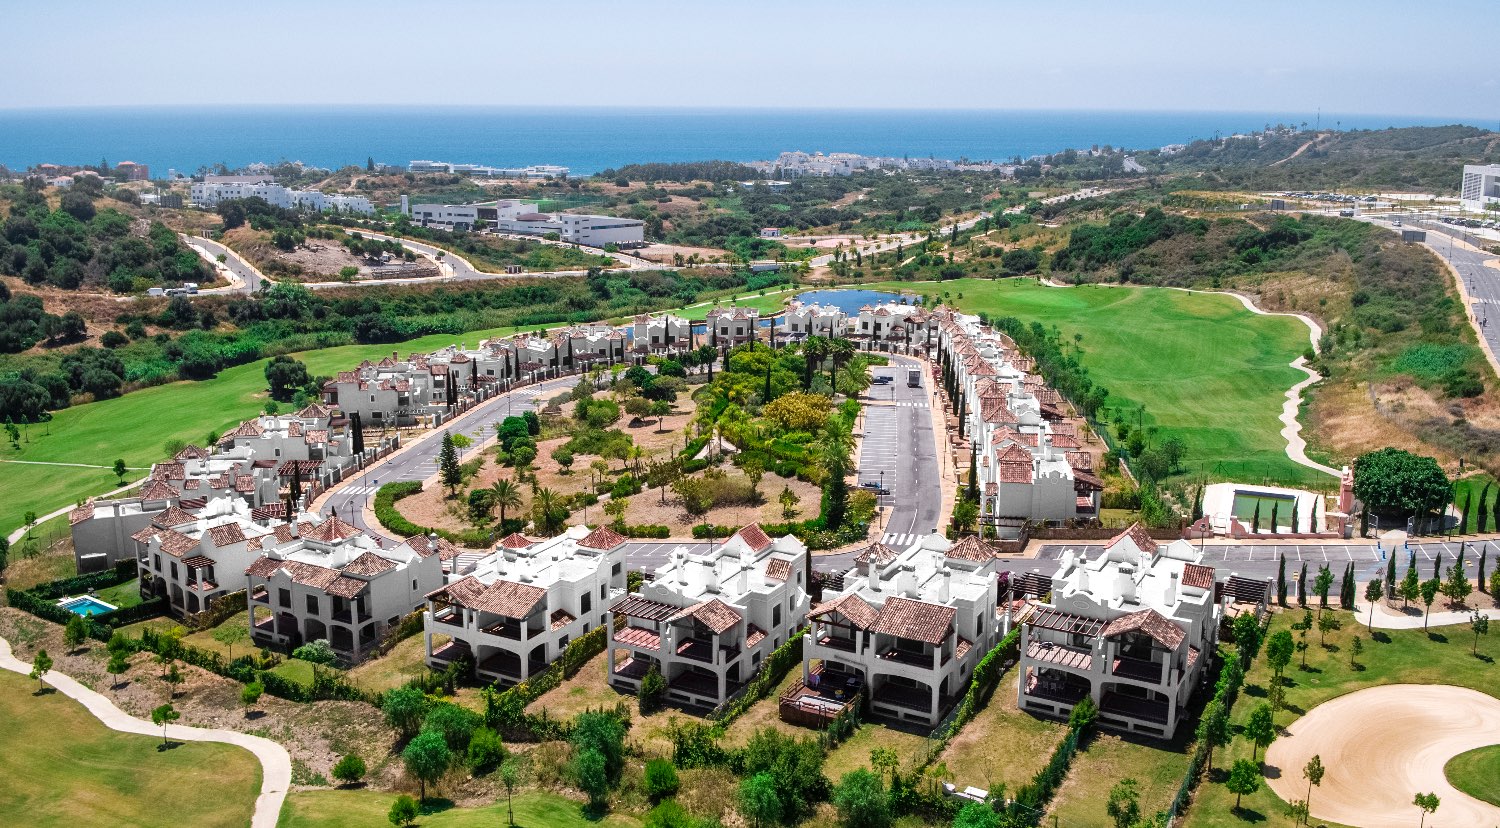 Villas de Golf pareada en Estepona - Costa del Sol